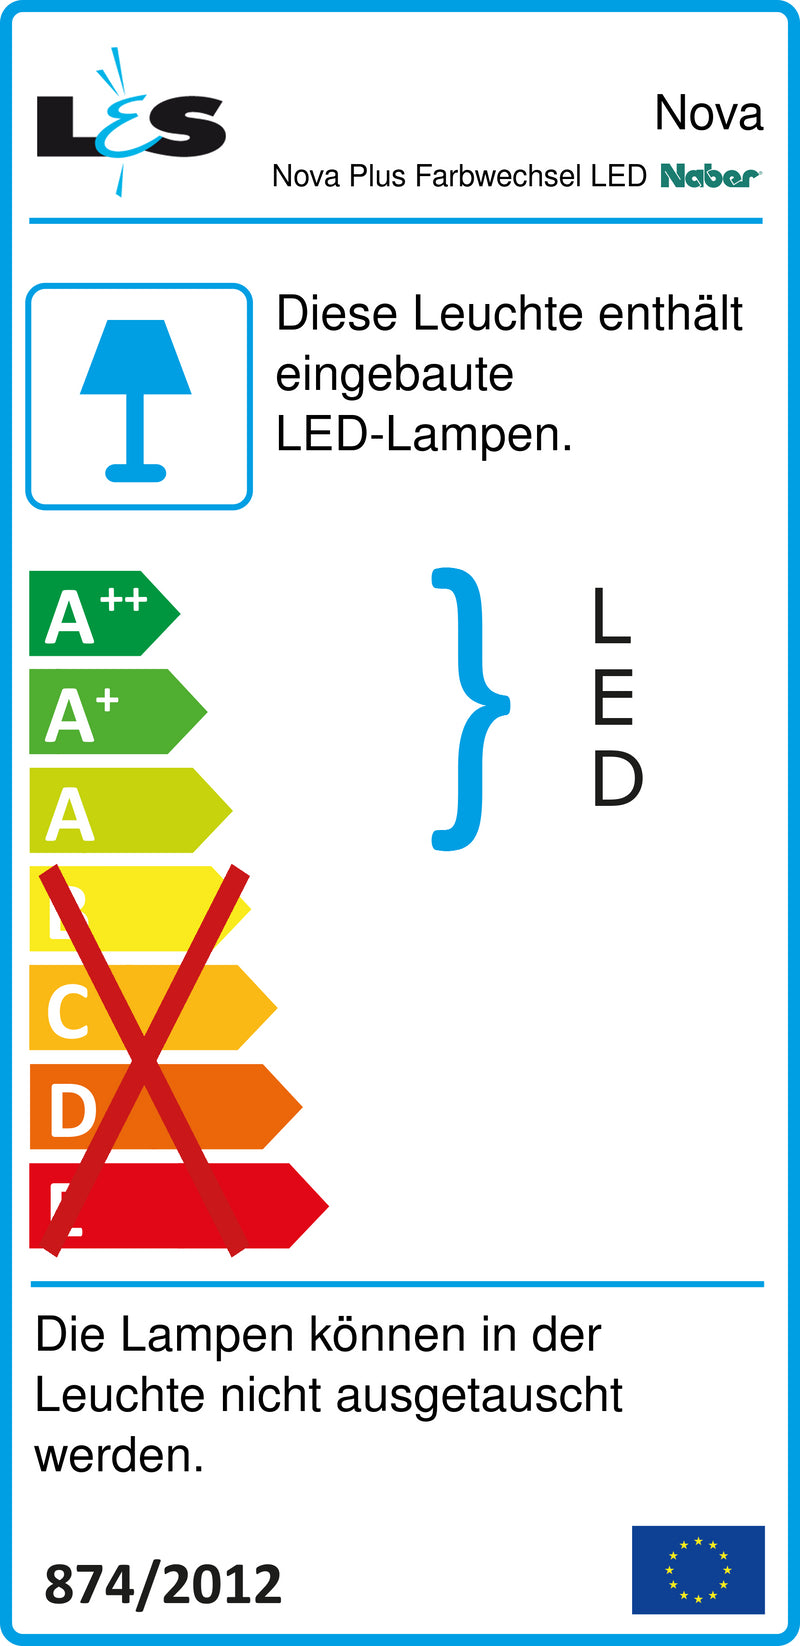 E-Label zu Zeichnung zu Nova Plus Farbwechsel LED als Variante Set-2, edelstahlfarbig von Naber GmbH in der Kategorie Lichttechnik in Österreich auf conceptshop.at